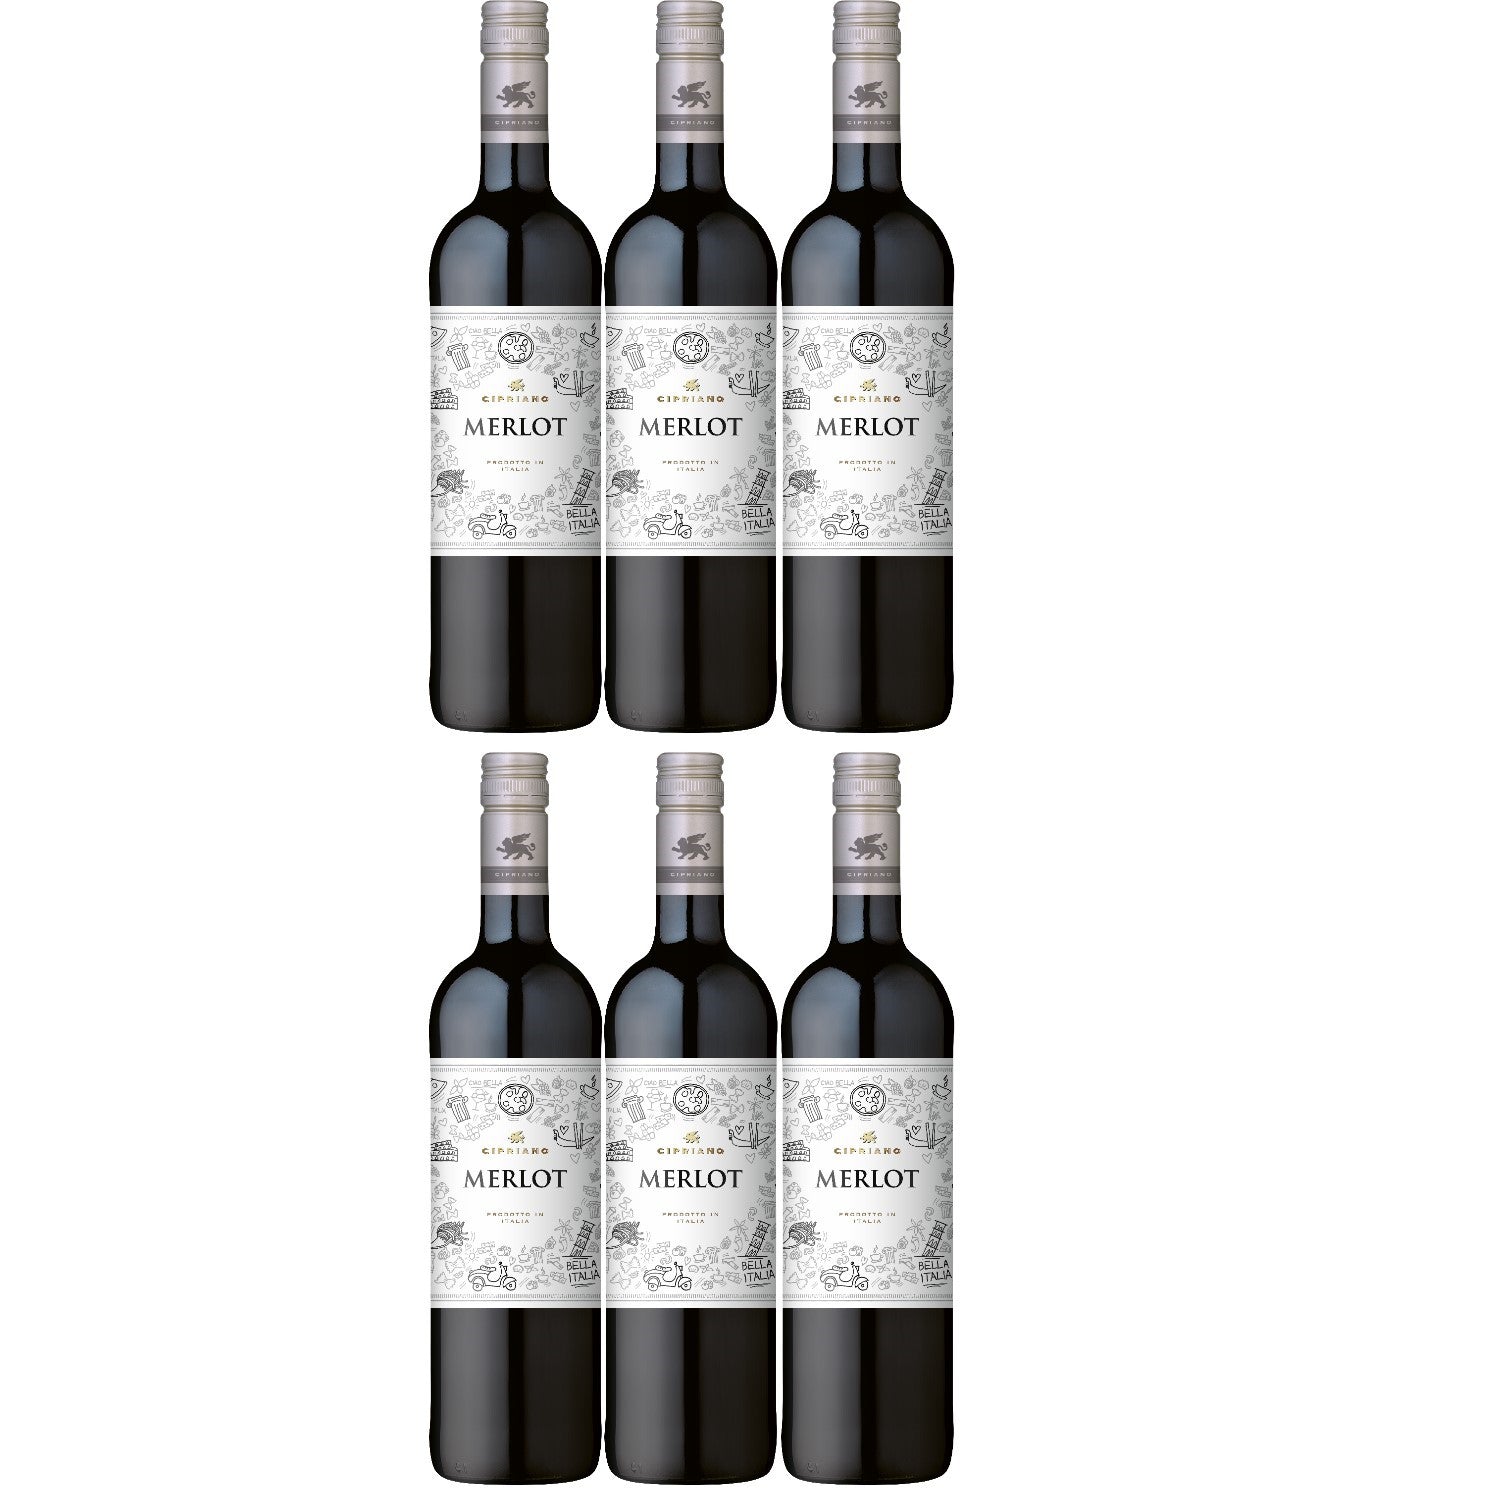 Cipriano Merlot Veneto Rotwein italienischer Wein trocken IGT Italien (6 x 0.75l) - Versanel -